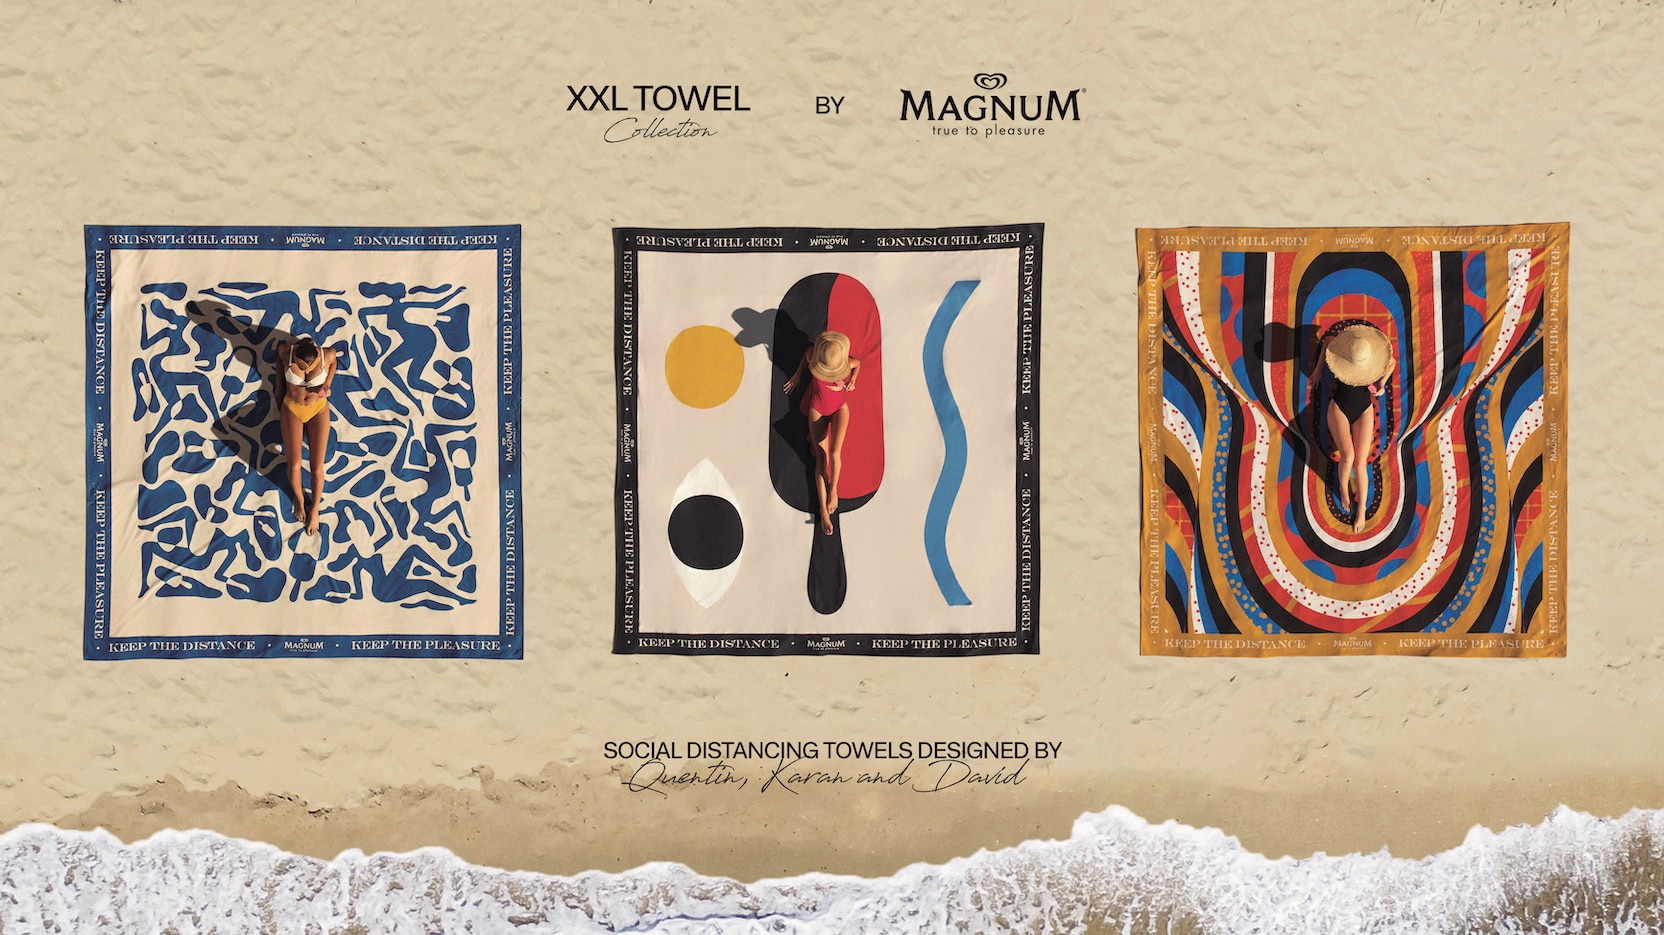 Magnum luxury beach towels